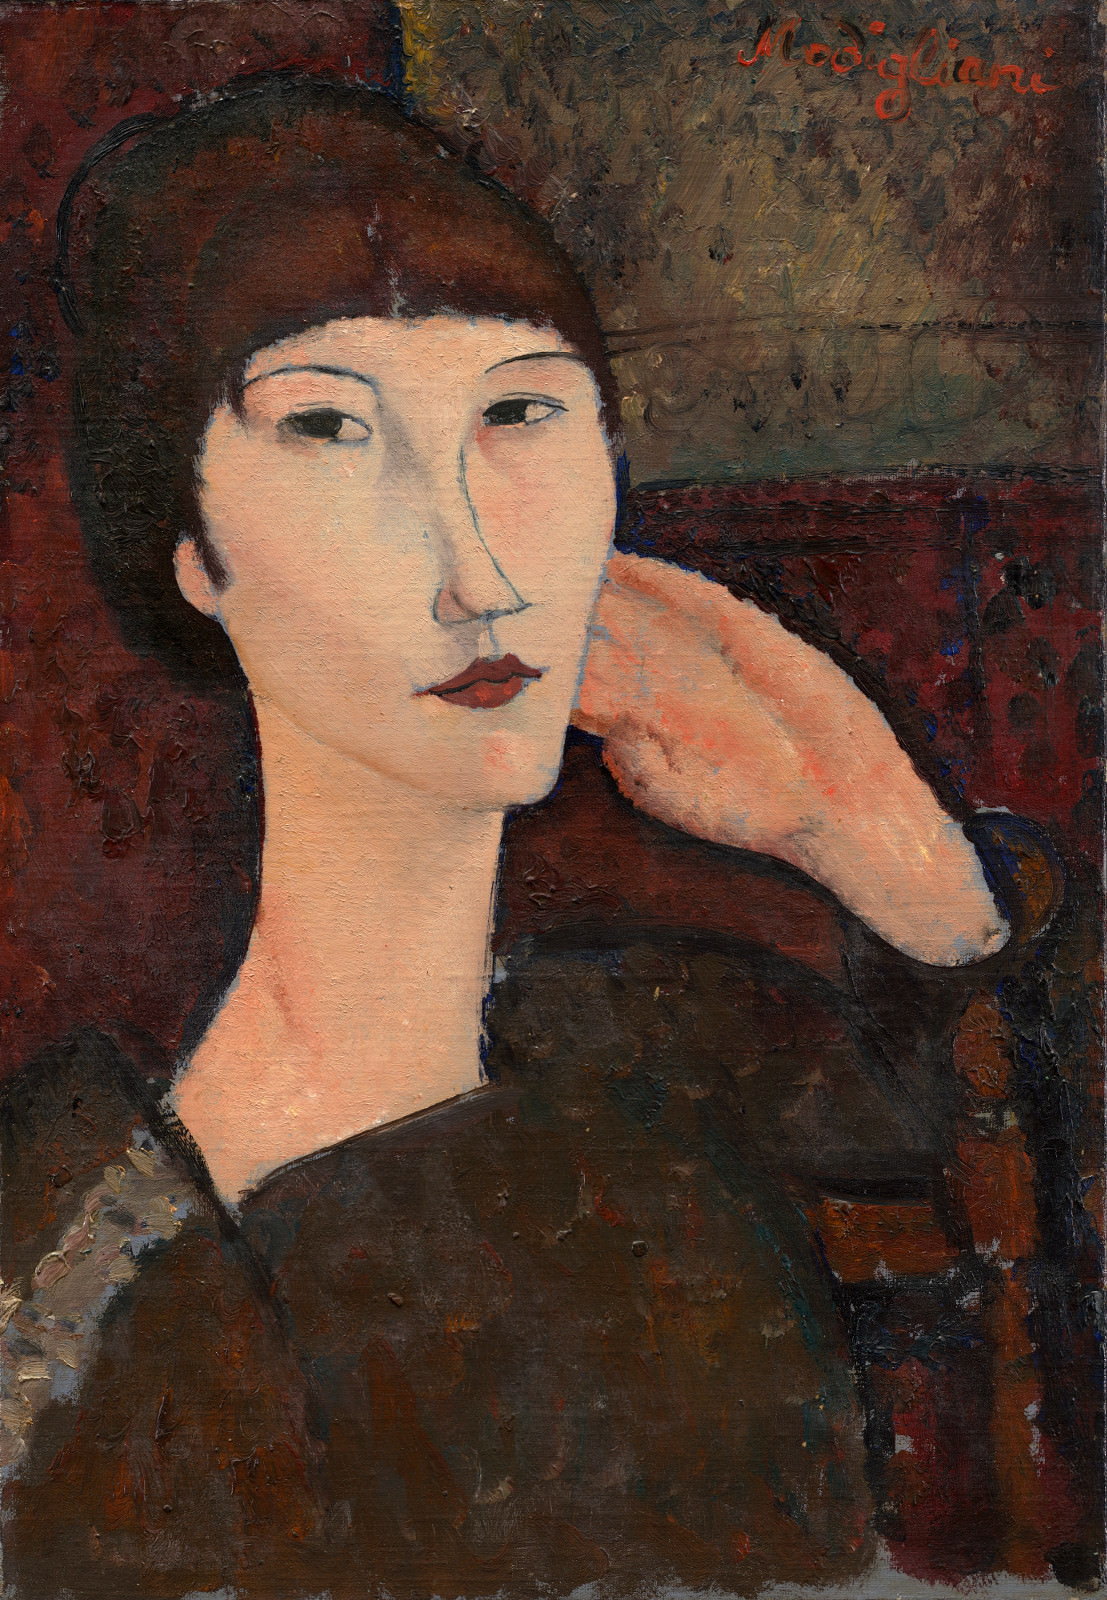 Feige. 8 - Adrienne (Frau mit Bangs), Amedeo Modigliani, 1917, Leinöl auf, 55.3 x 38.1 cm. National Gallery of Art, Washington. Chester Dale Collection.